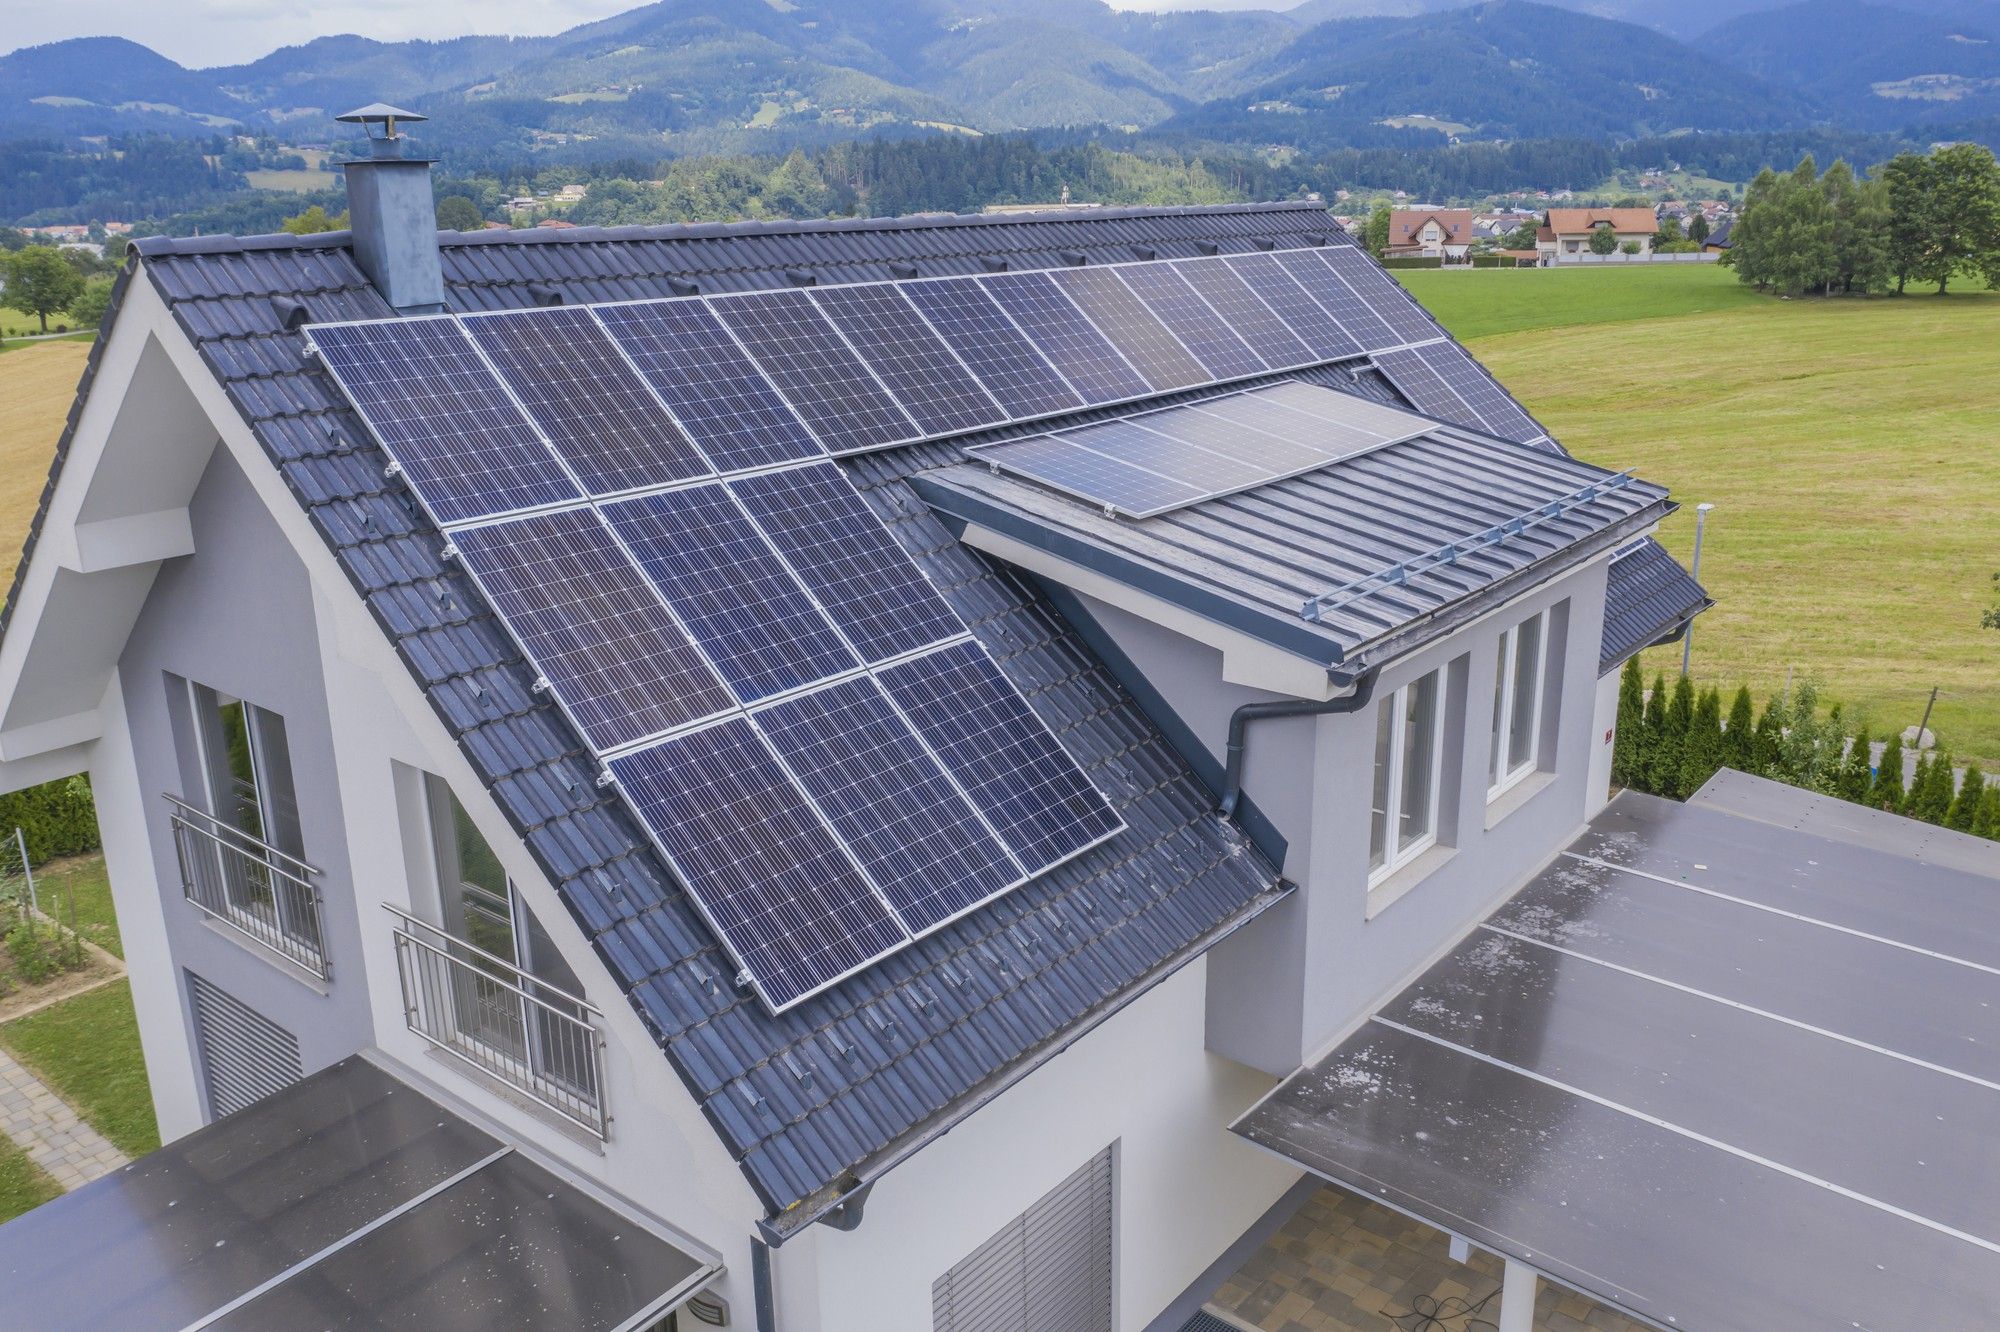 Einfamilienhaus mit Solaranlagen auf dem Dach